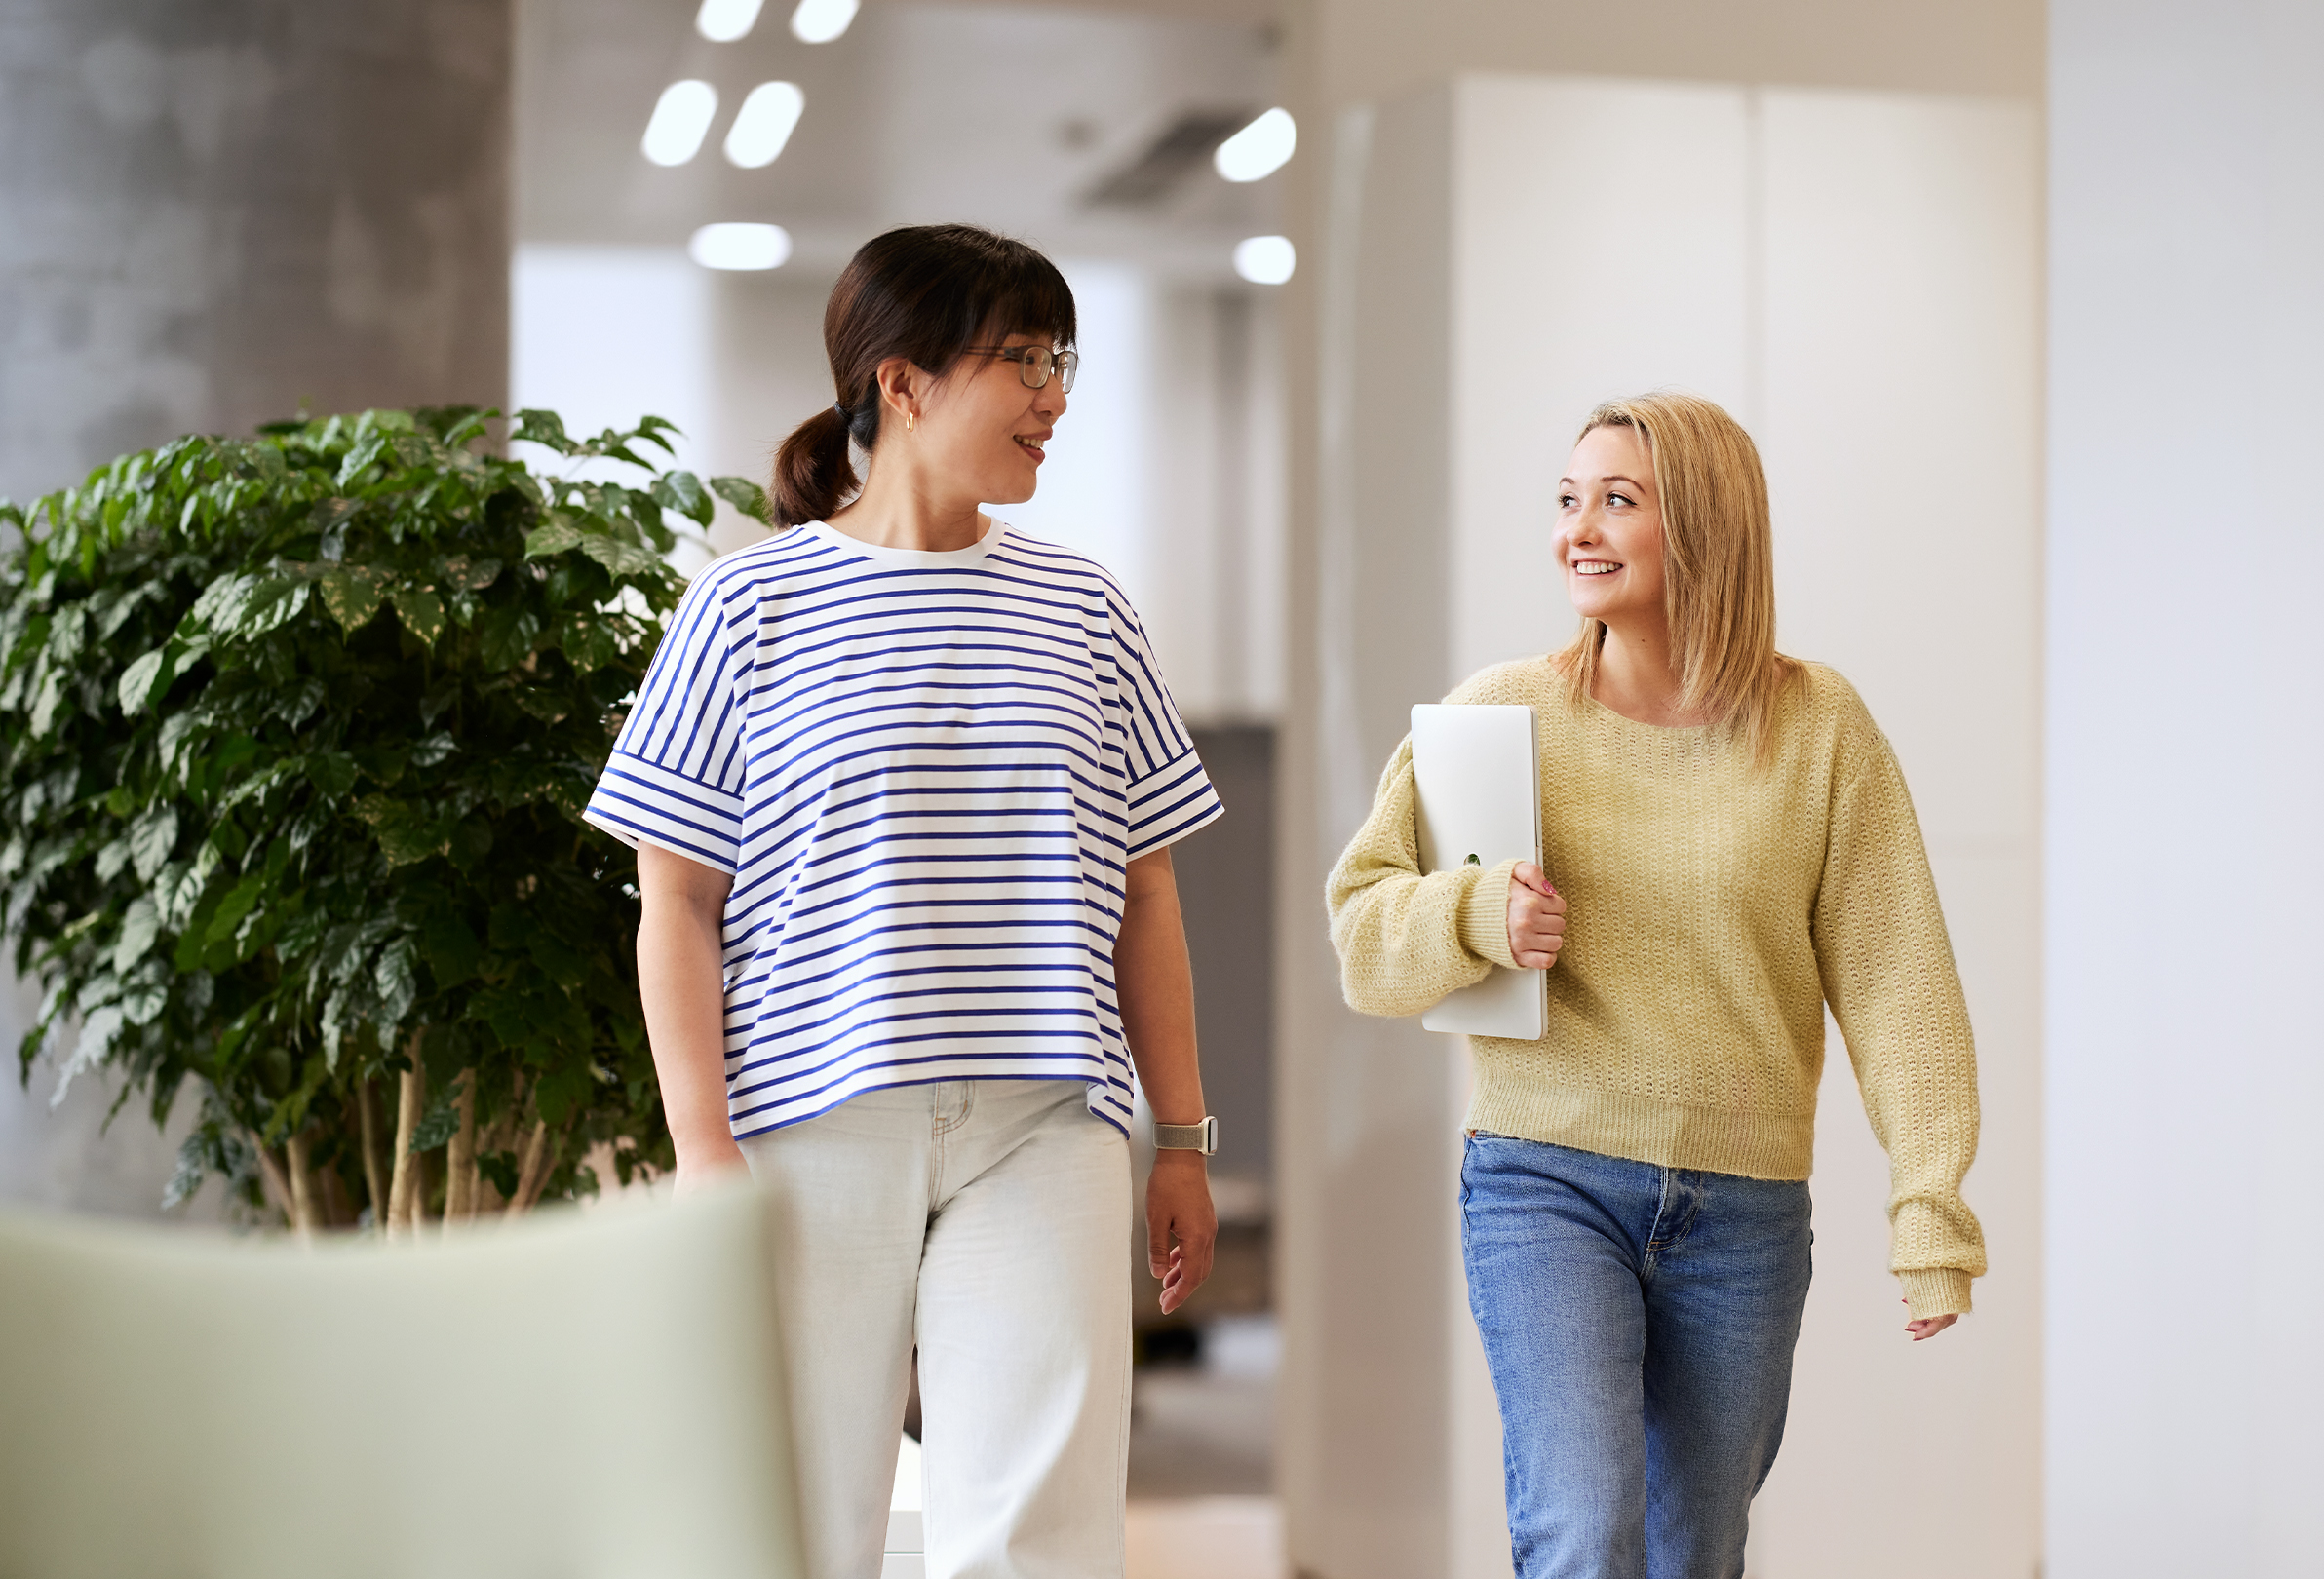 Dos empleadas de Apple sonríen y tienen una conversación mientras caminan en un espacio común iluminado.